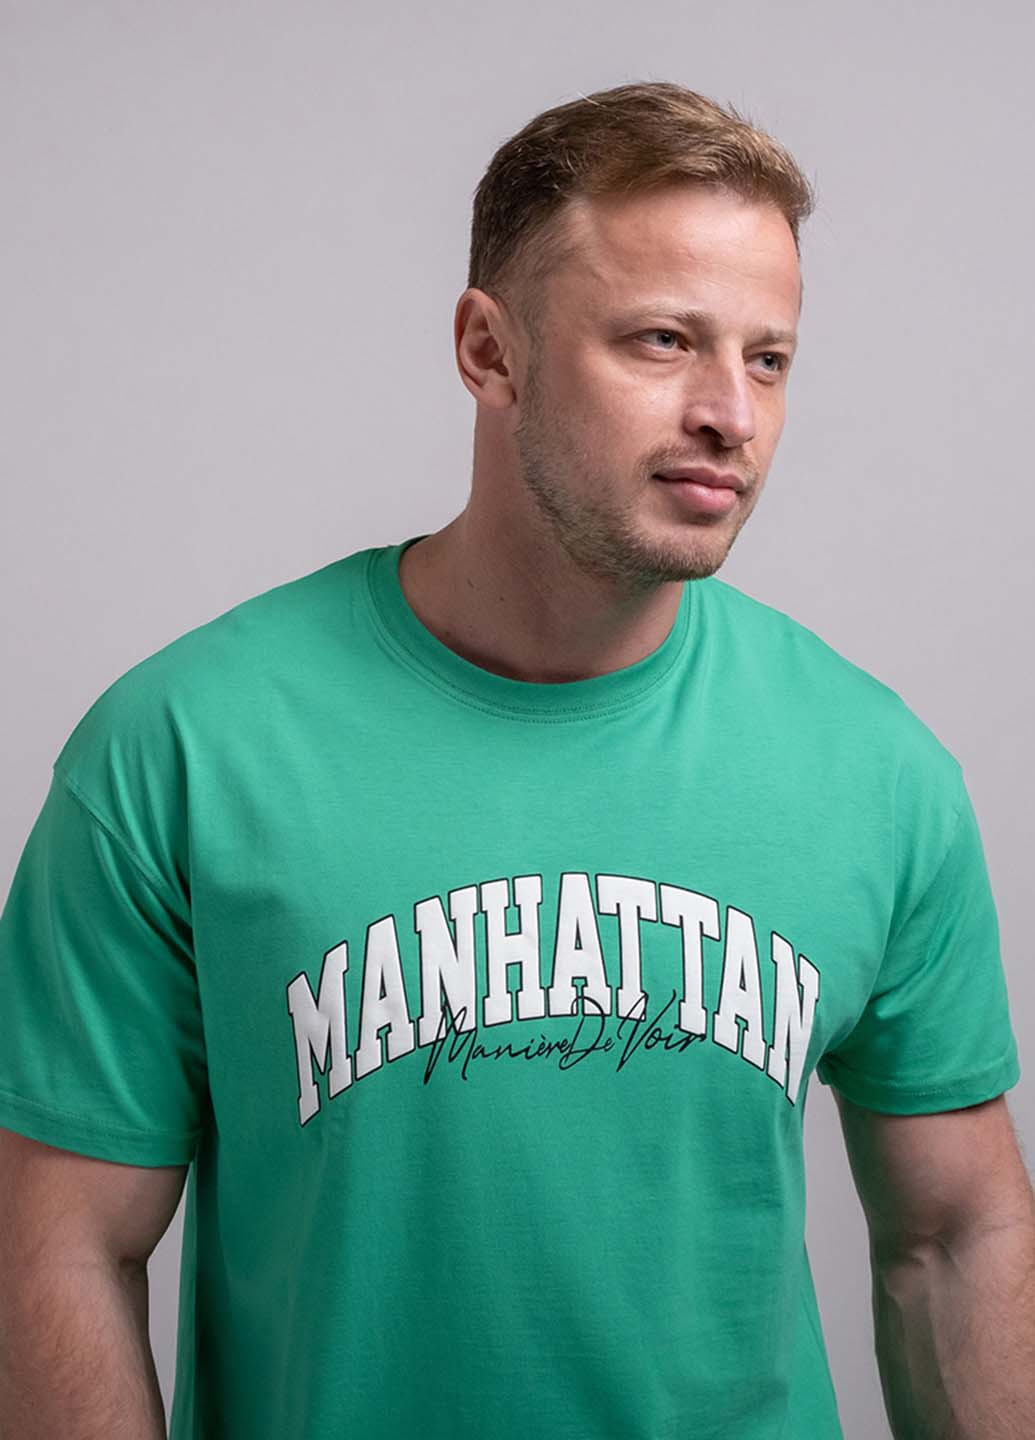 Зеленая футболка Fashion